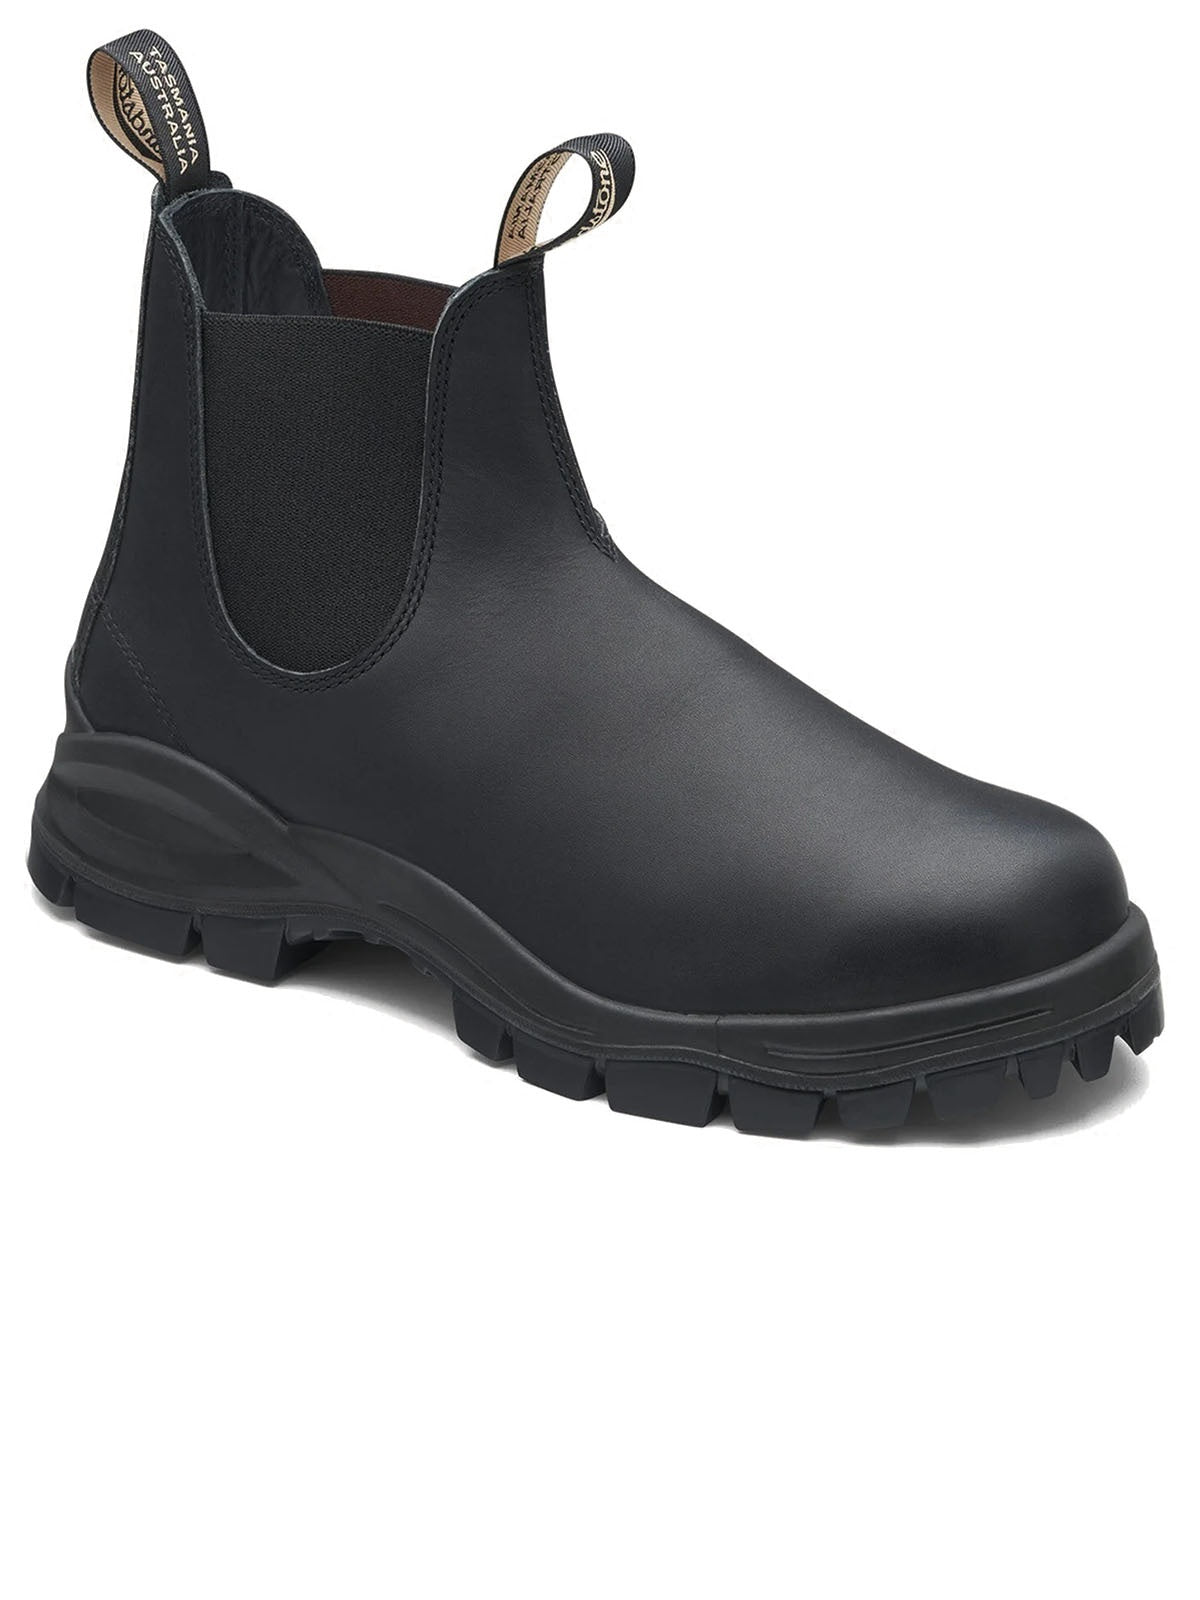 Stivali Uomo Blundstone - 2240 Premium Leather Lined Elastic Sided Lug Boot - Nero